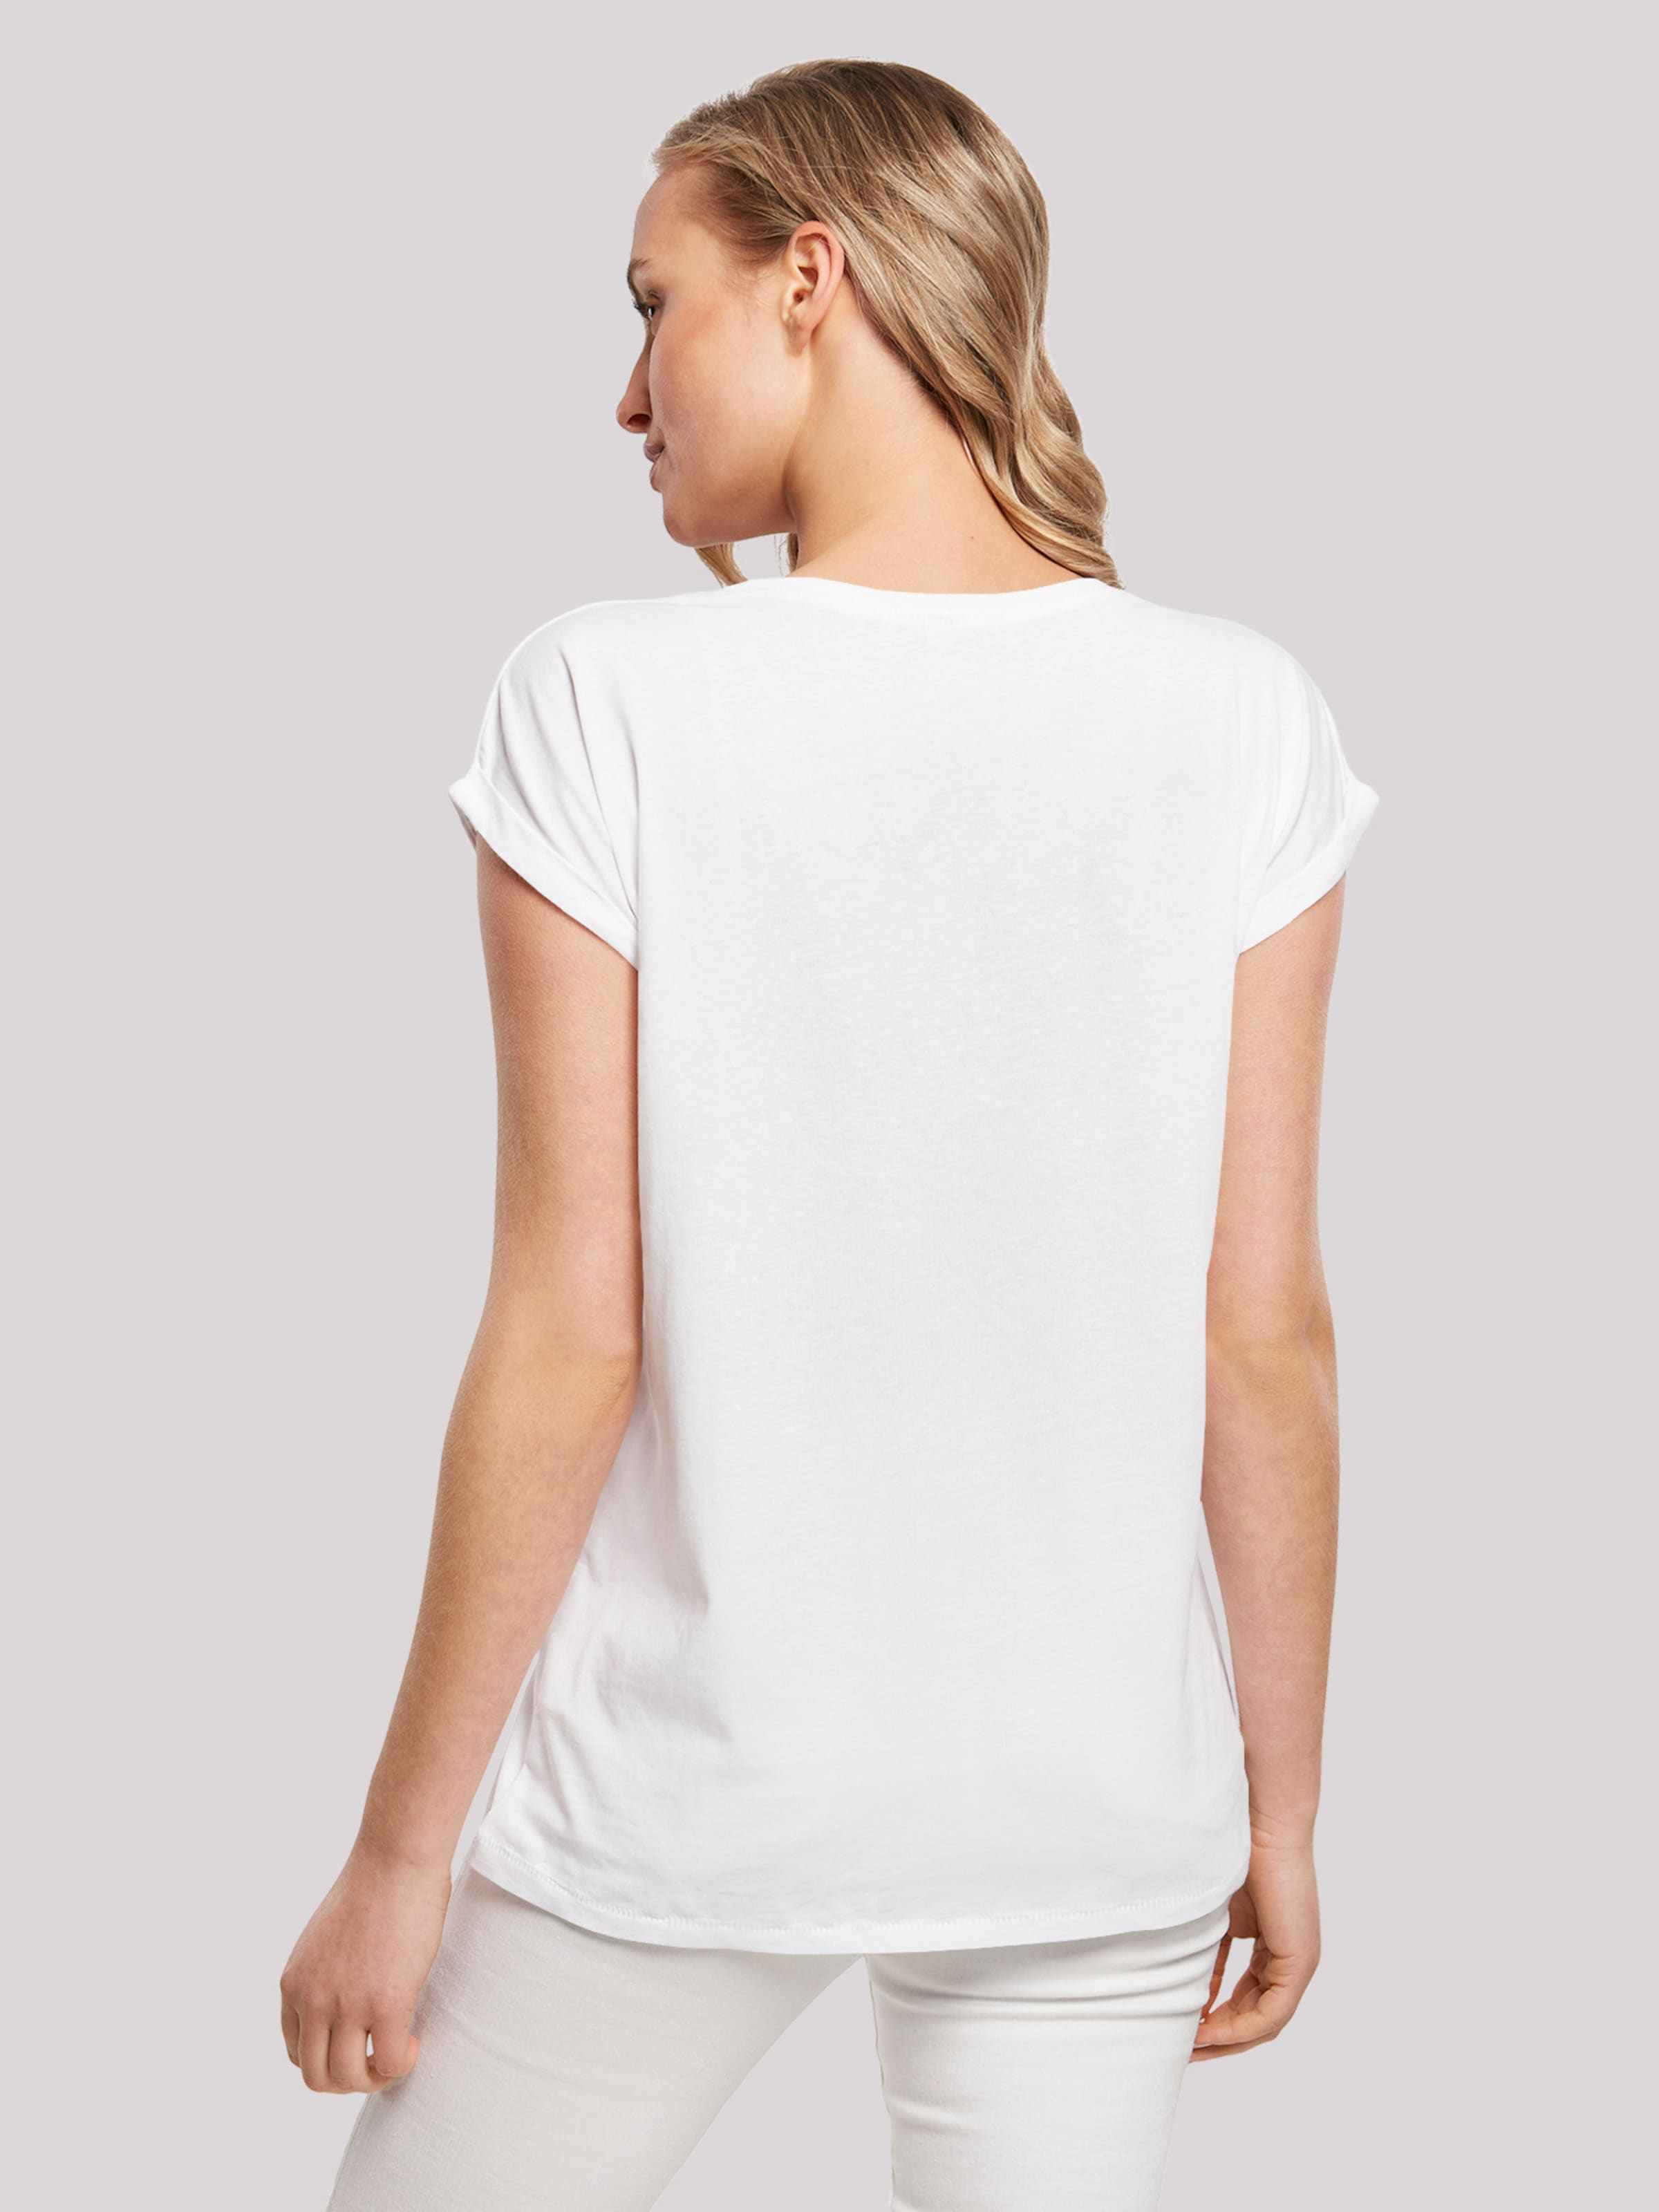 Frauen Shirts & Tops F4NT4STIC T-Shirt in Weiß - EB09600